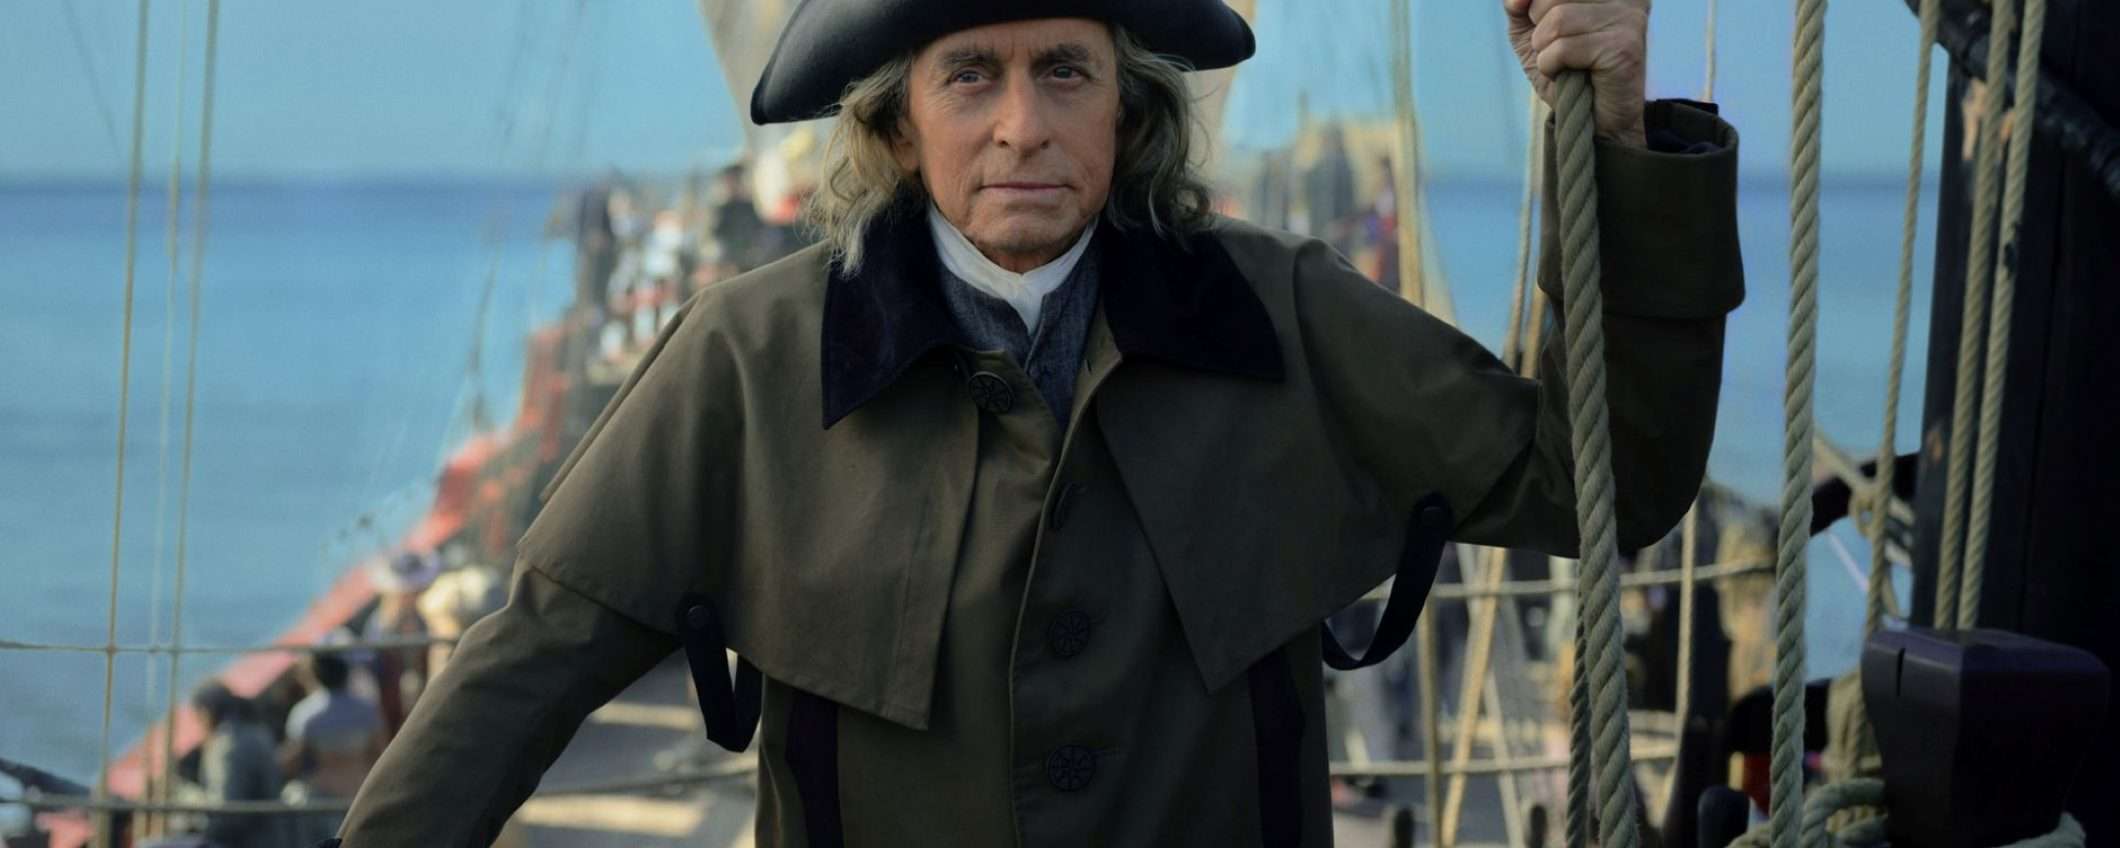 Benjamin Franklin: guarda gratis in streaming i primi 3 episodi su Apple TV+